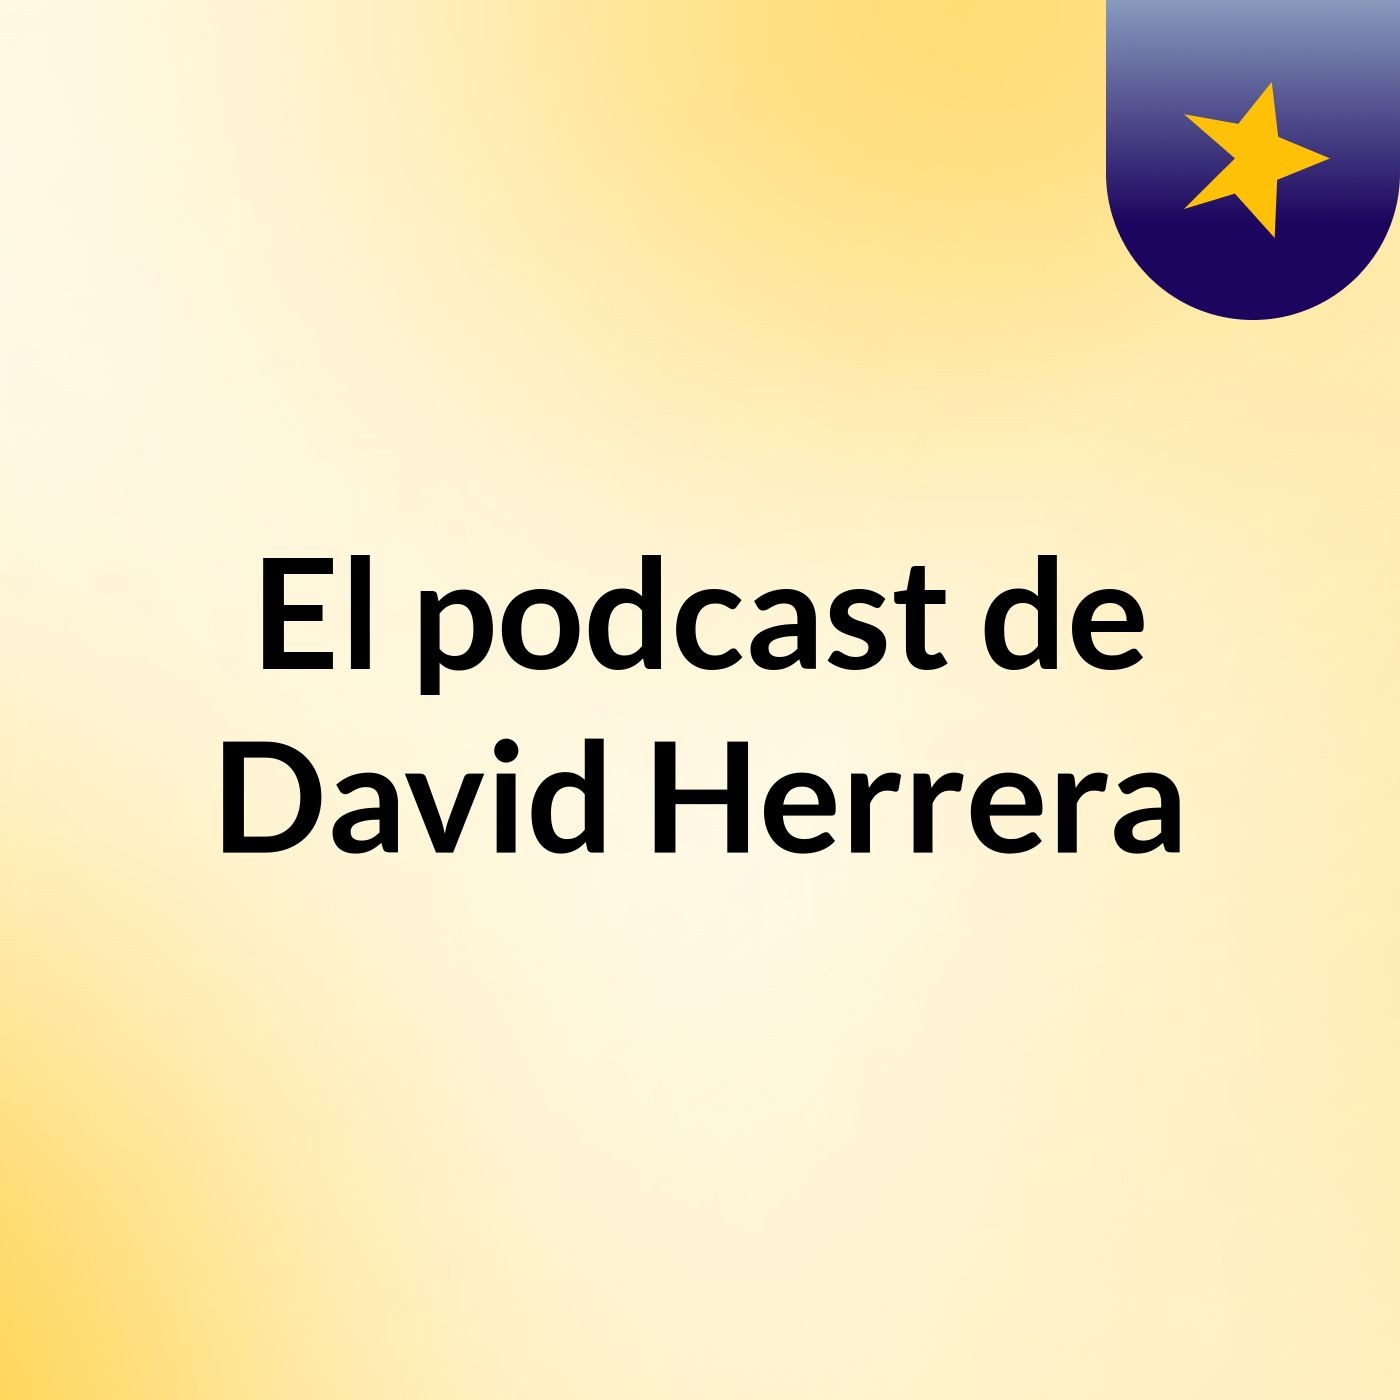 El podcast de David Herrera